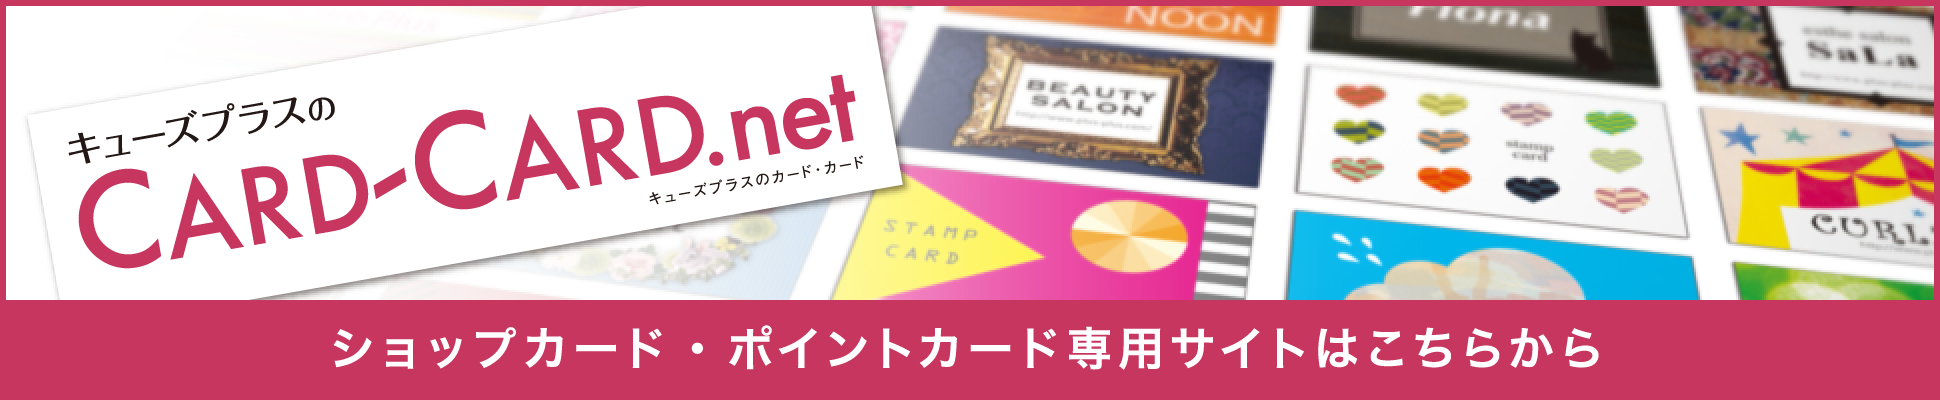 キューズプラスのCARD-CARD.net